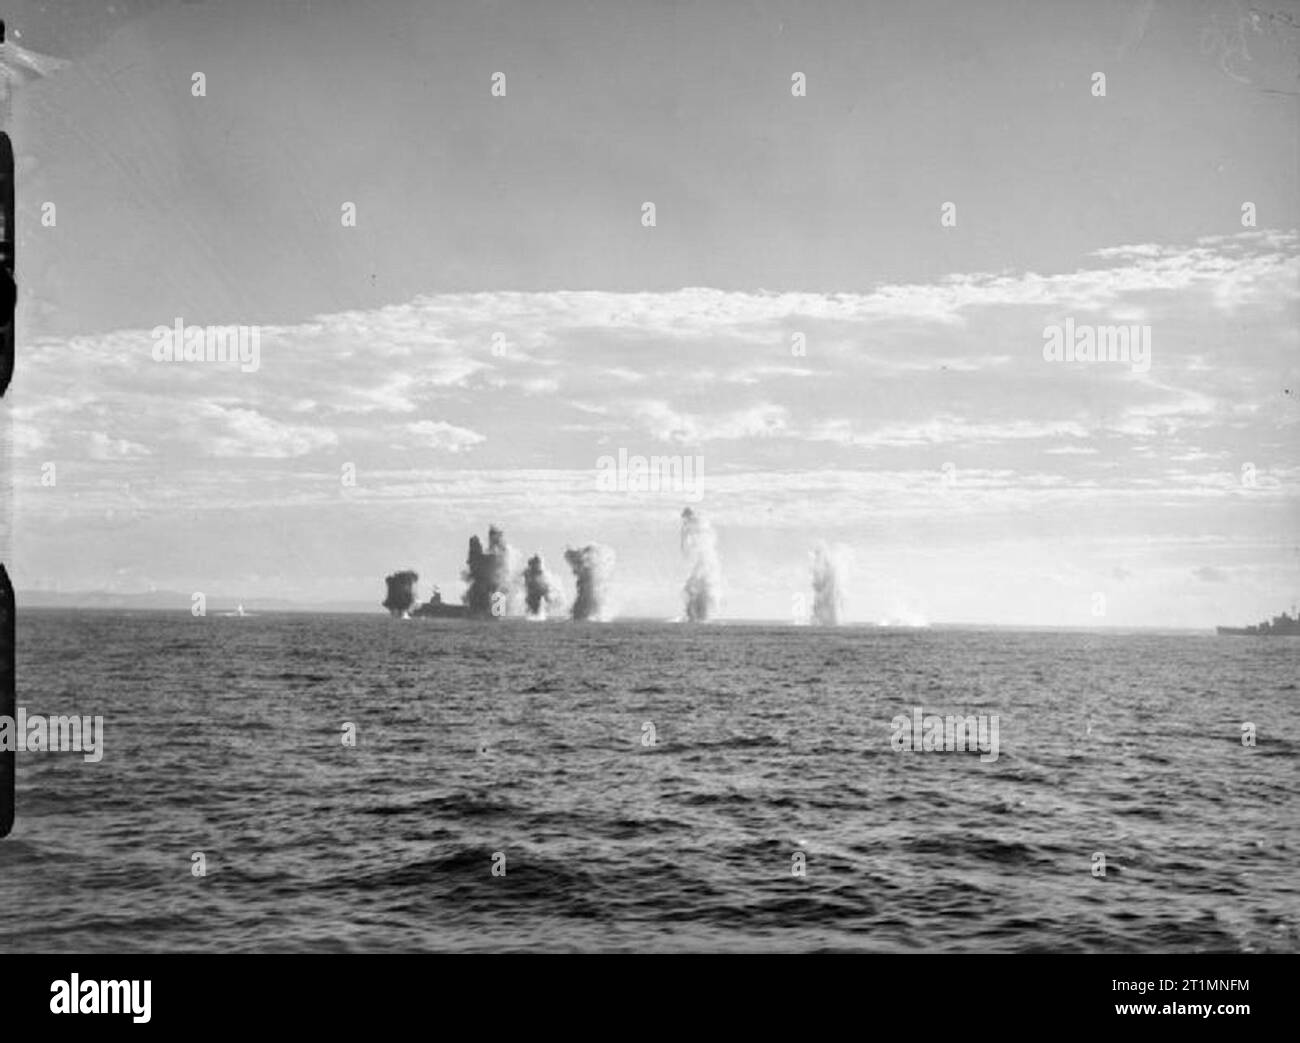 Die Royal Navy während des Zweiten Weltkrieges Bomben aus den italienischen Flugzeugen verdecken den Blick auf die HMS ARK ROYAL, während Sie unter Beschuss aus Sardinien war. Foto von HMS KELVIN genommen. Stockfoto